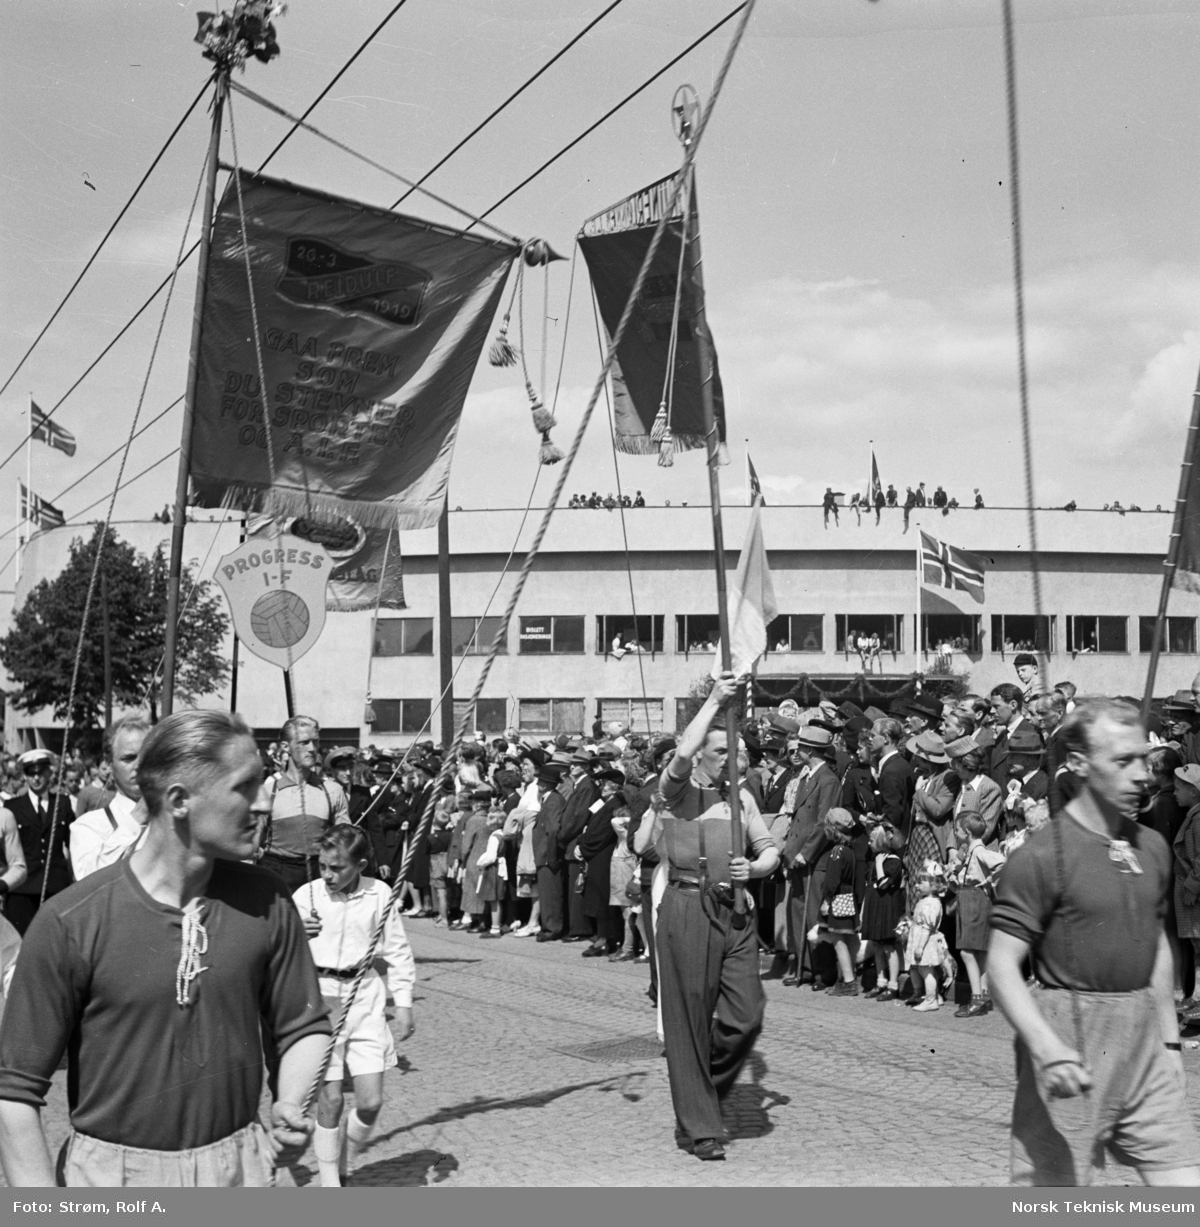 Opptog under Idrettens dag med faner fra Reidulf og Progress idrettsforeninger, utenfor Bislett stadion, Oslo, juni 1945.